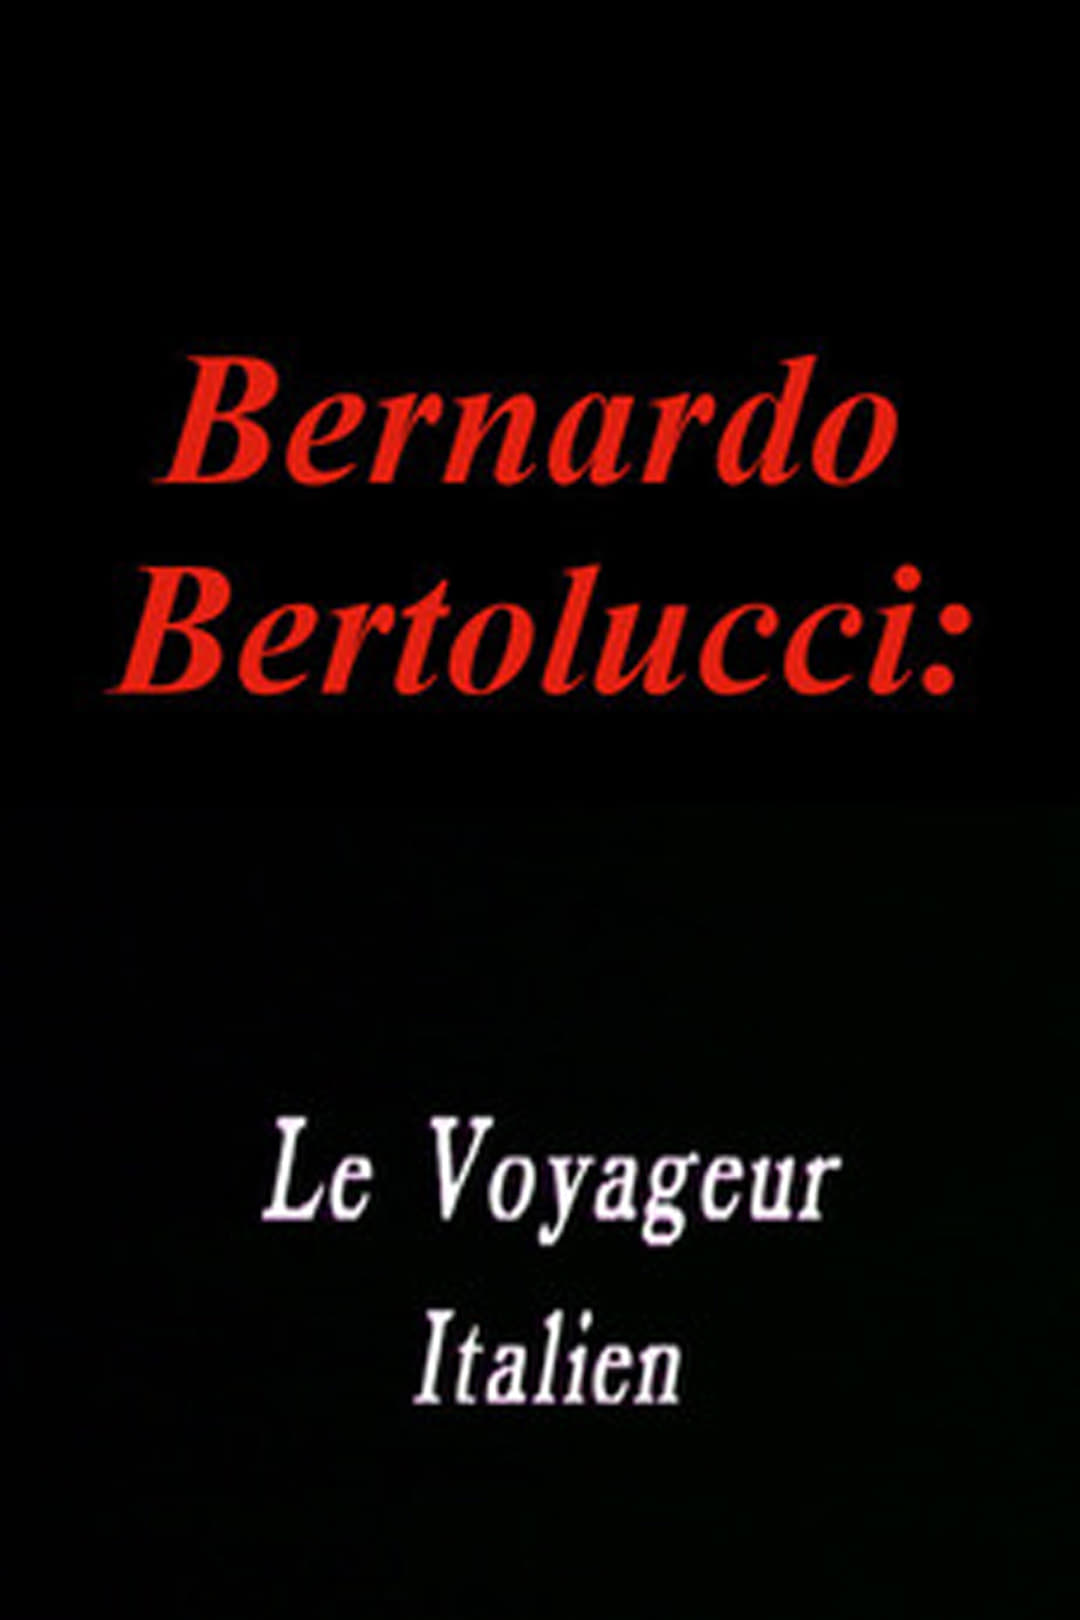 Bernardo Bertolucci: The Italian Traveler (1987)